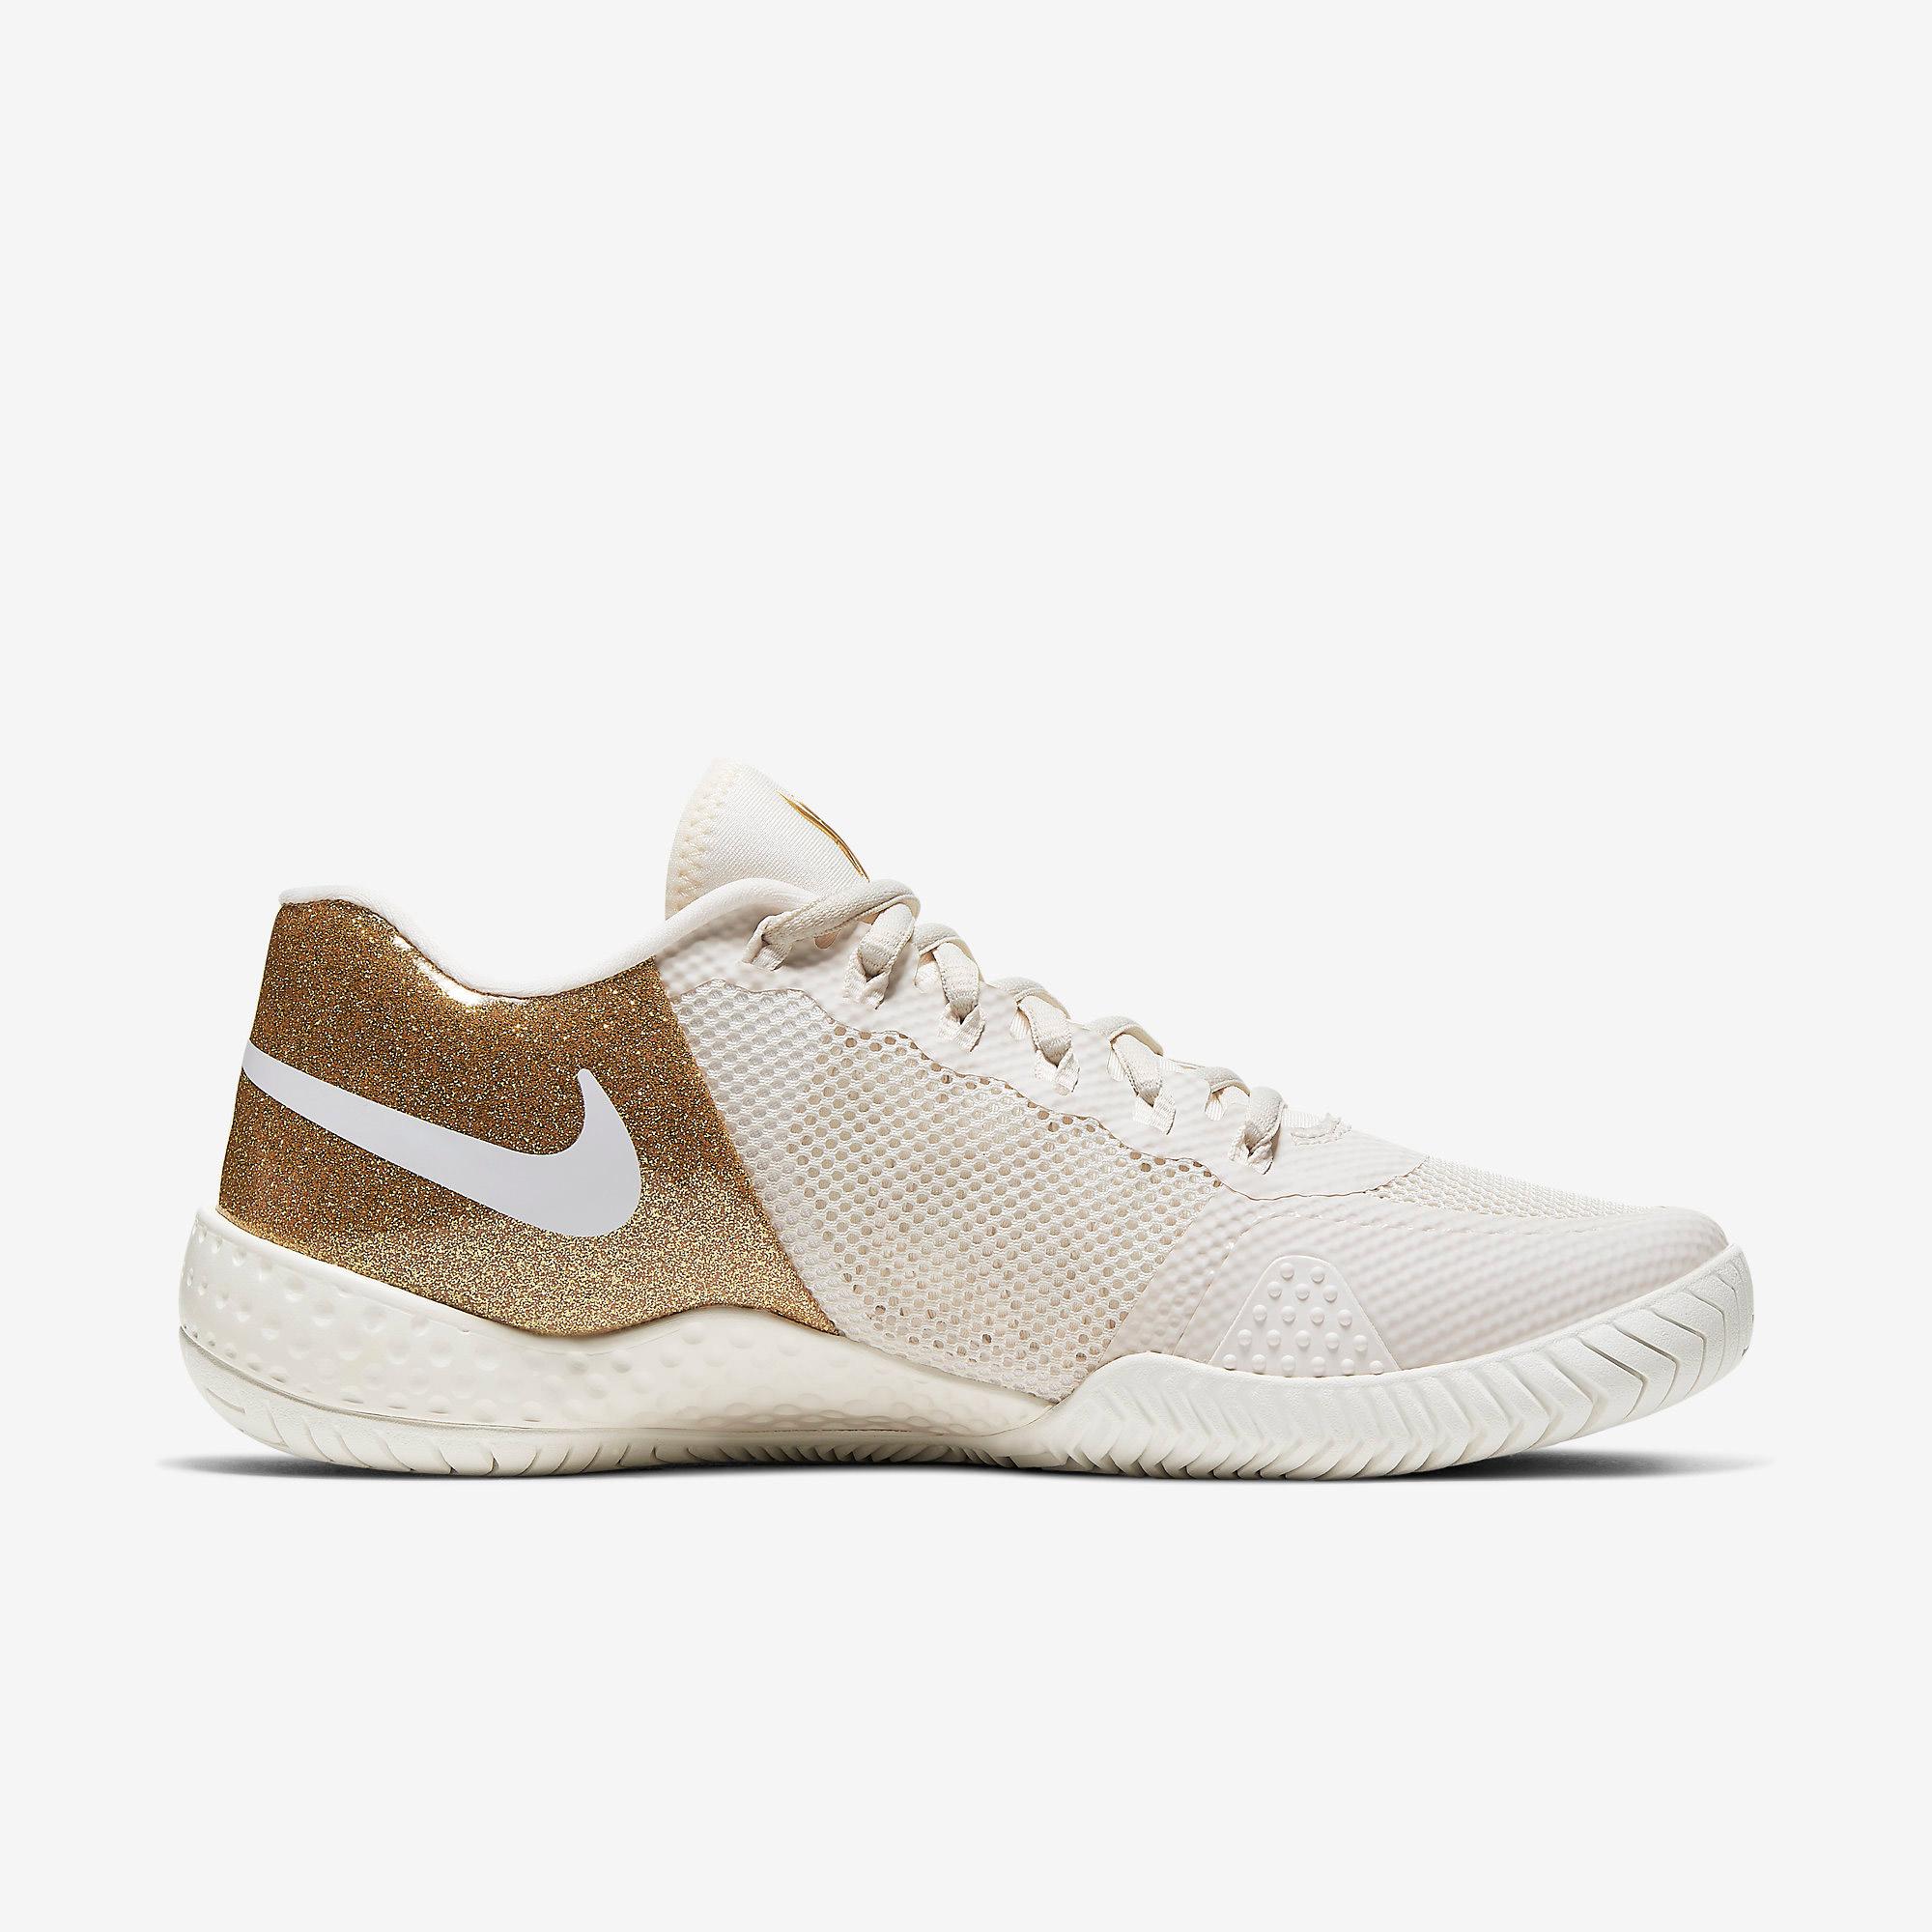 Nike Womens Flare 2 Tennis Shoes - Phantom/Metallic Gold - Tennisnuts.com